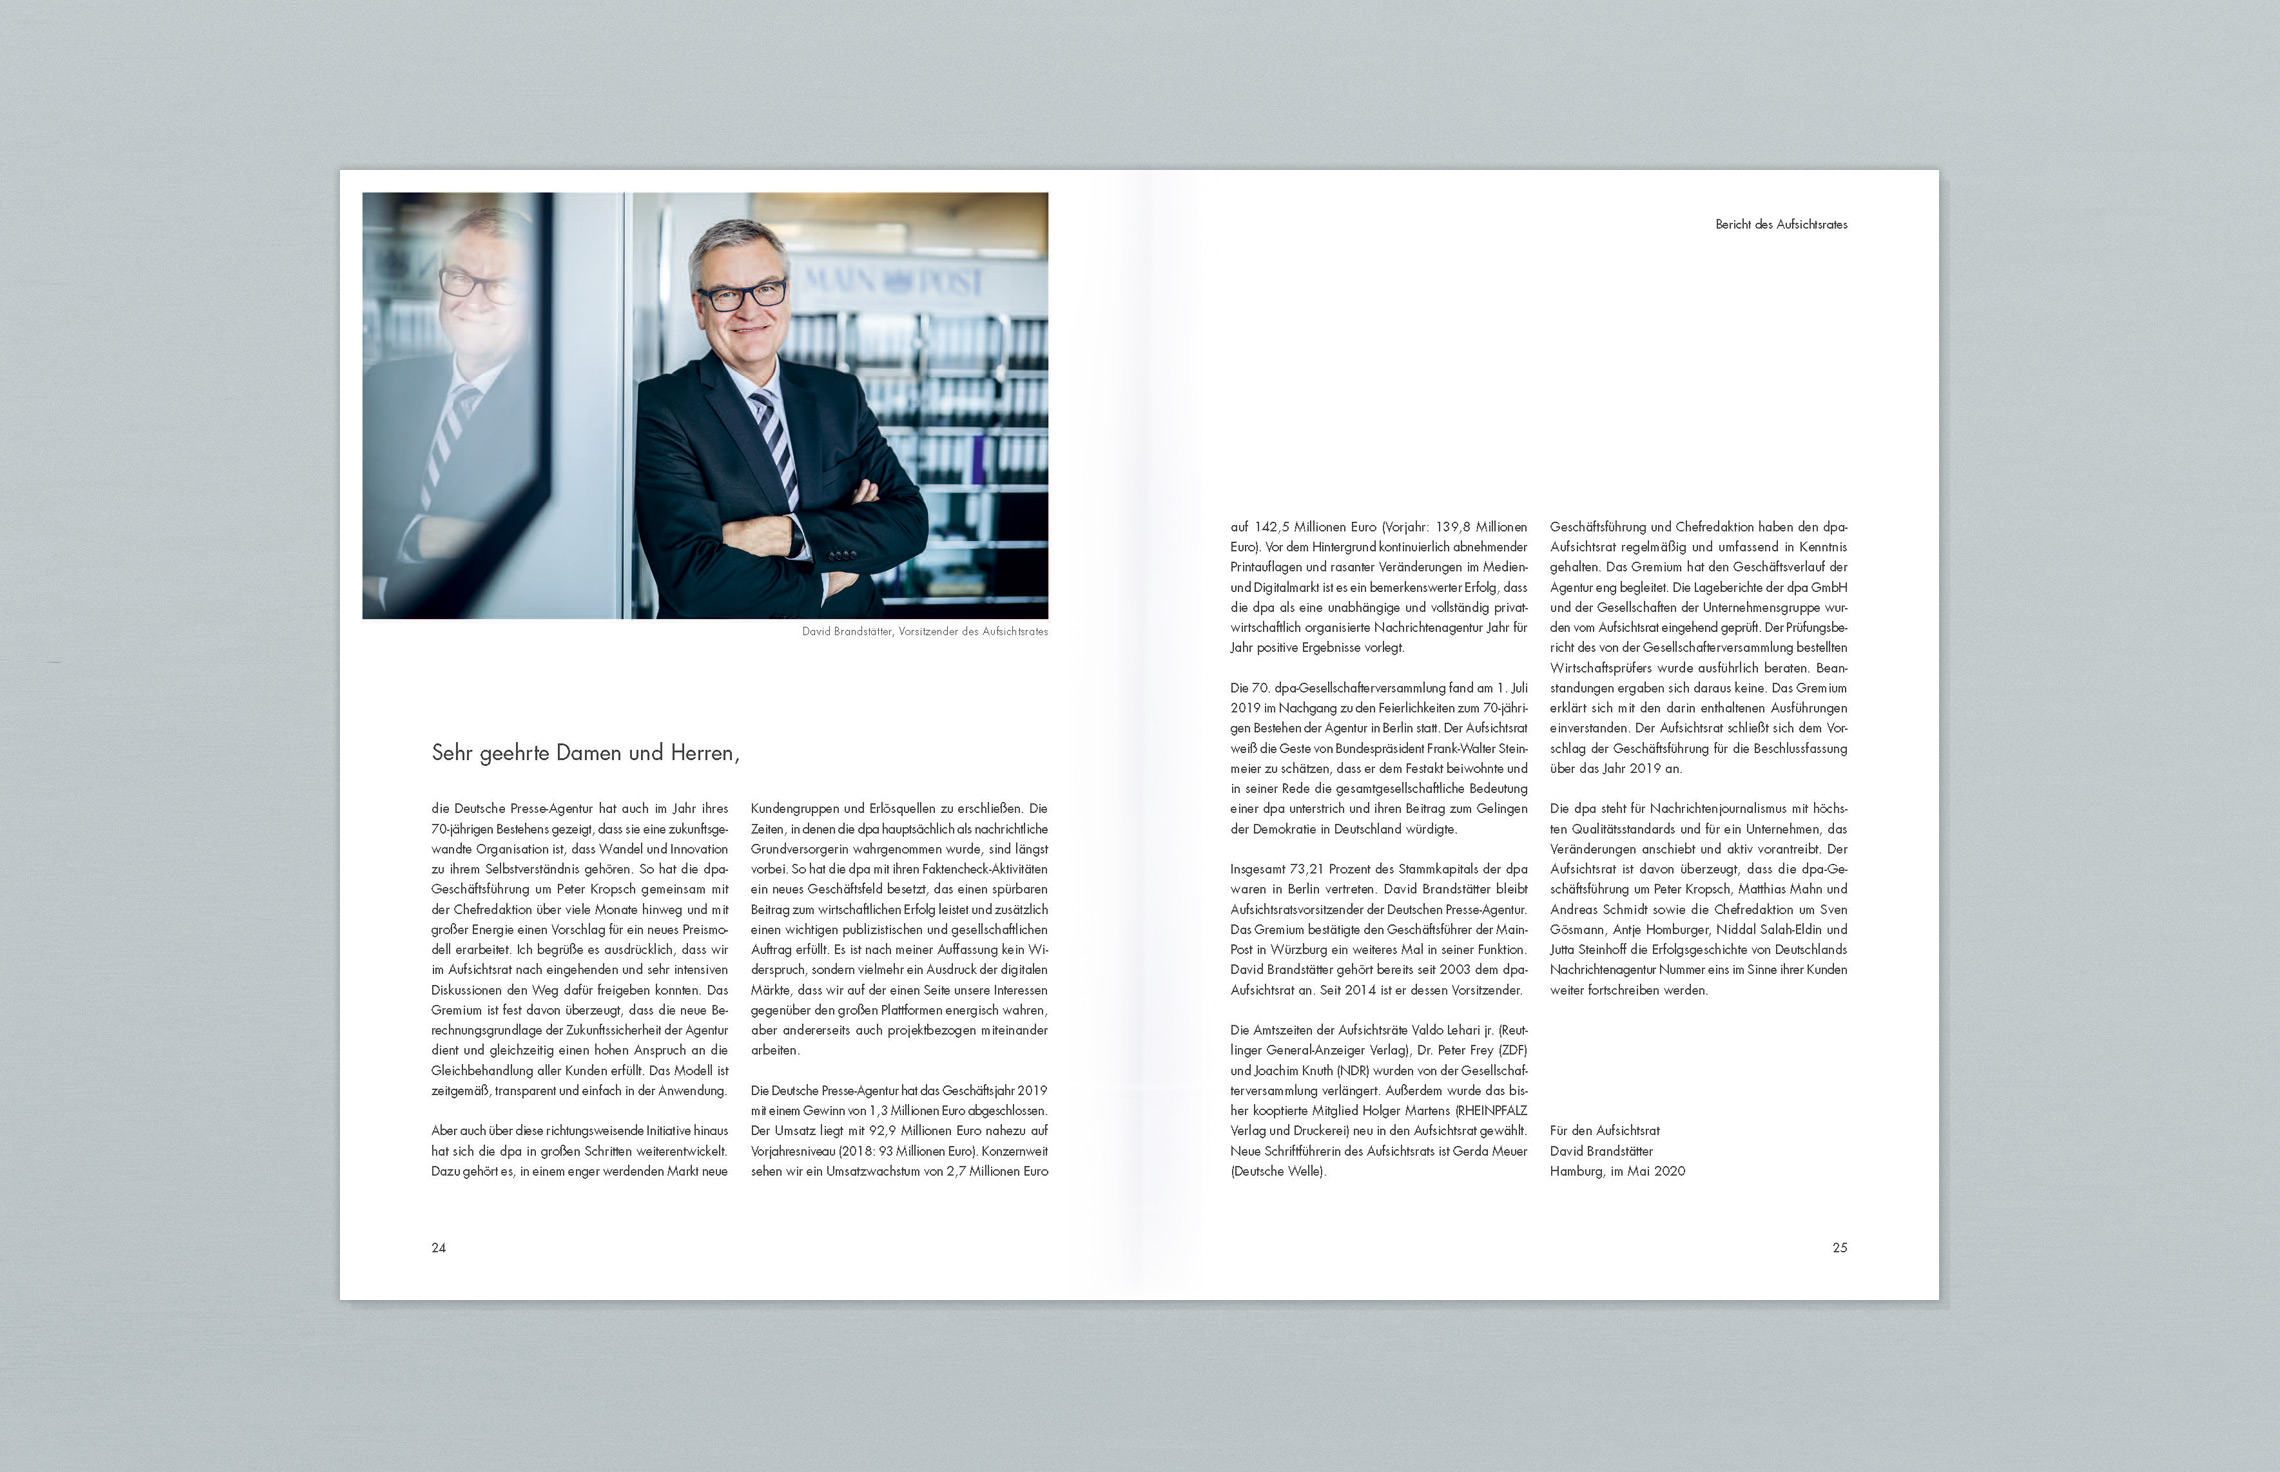 Annual Report Design, Geschäftsbericht 2019 der dpa Deutsche Presse-Agentur, Hamburg; Innenseiten; Fotografie, Bericht des Aufsichtsrates